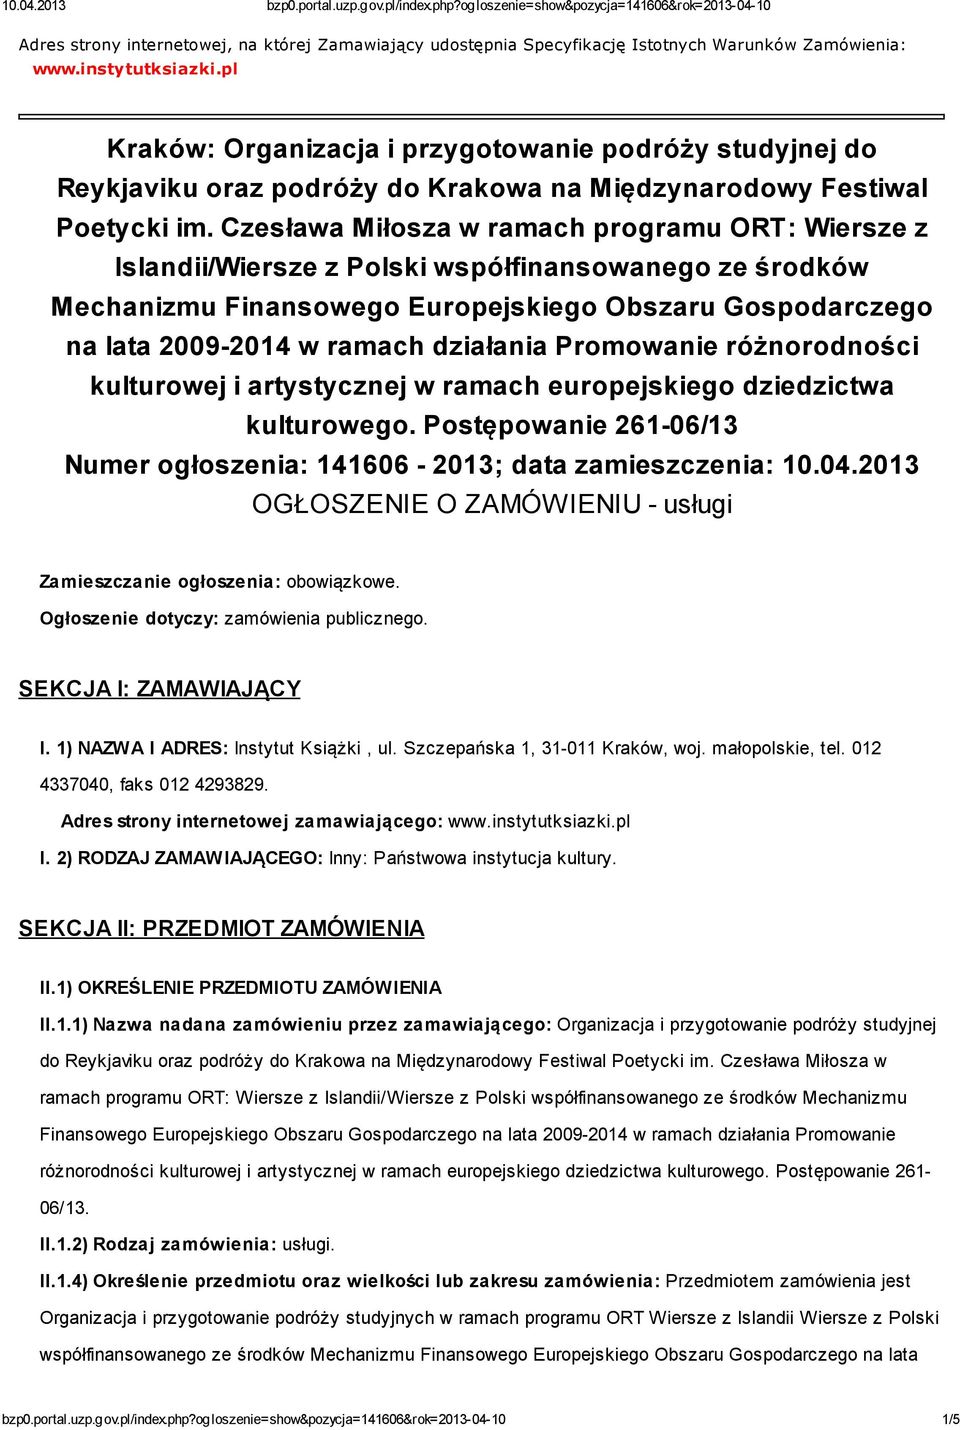 Czesława Miłosza w ramach programu ORT: Wiersze z Islandii/Wiersze z Polski współfinansowanego ze środków Mechanizmu Finansowego Europejskiego Obszaru Gospodarczego na lata 2009-2014 w ramach